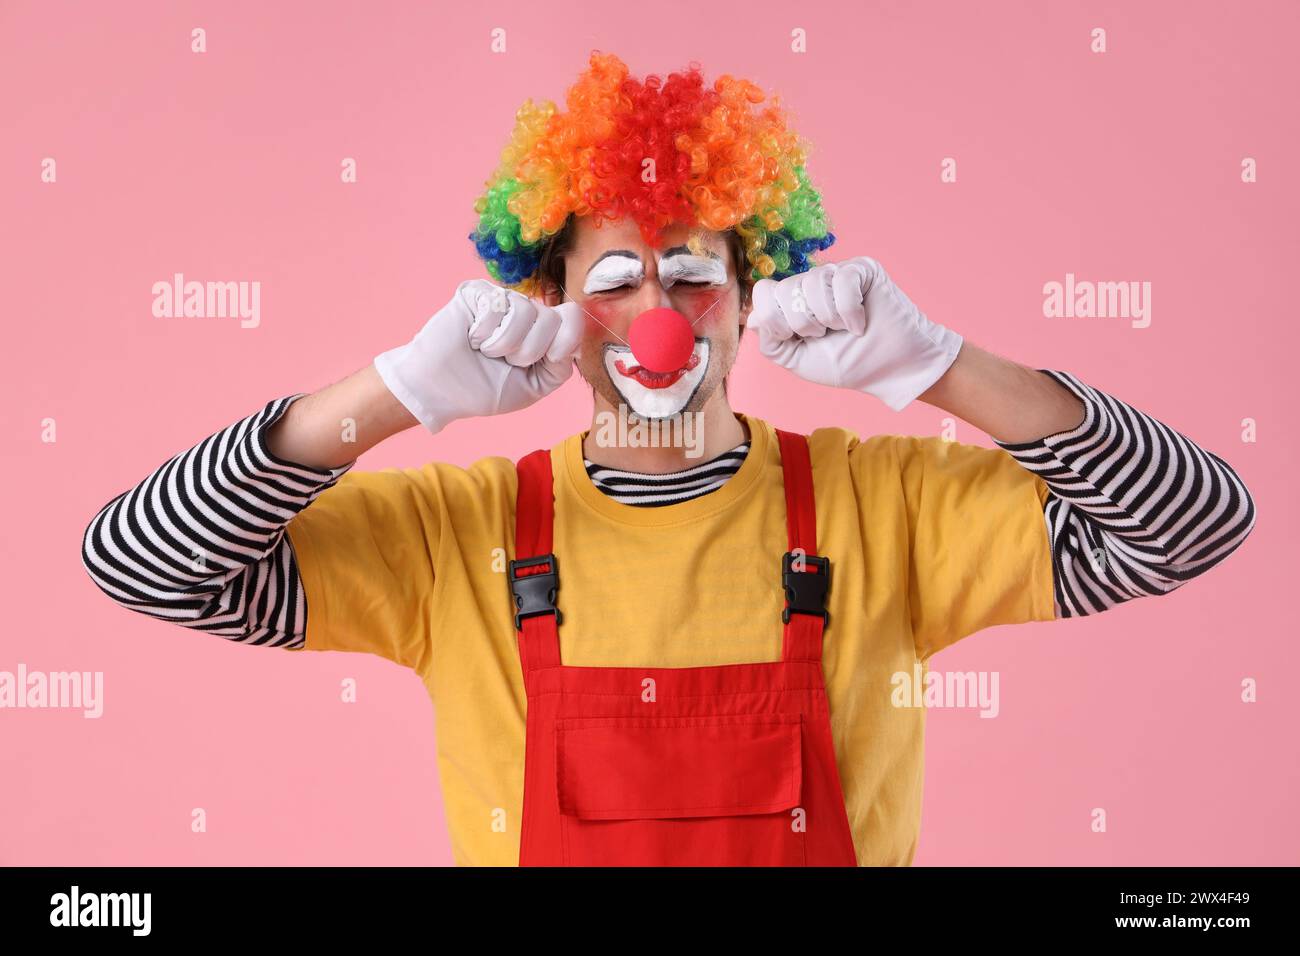 Portrait de clown triste sur fond rose. Fête du fou d'avril Banque D'Images